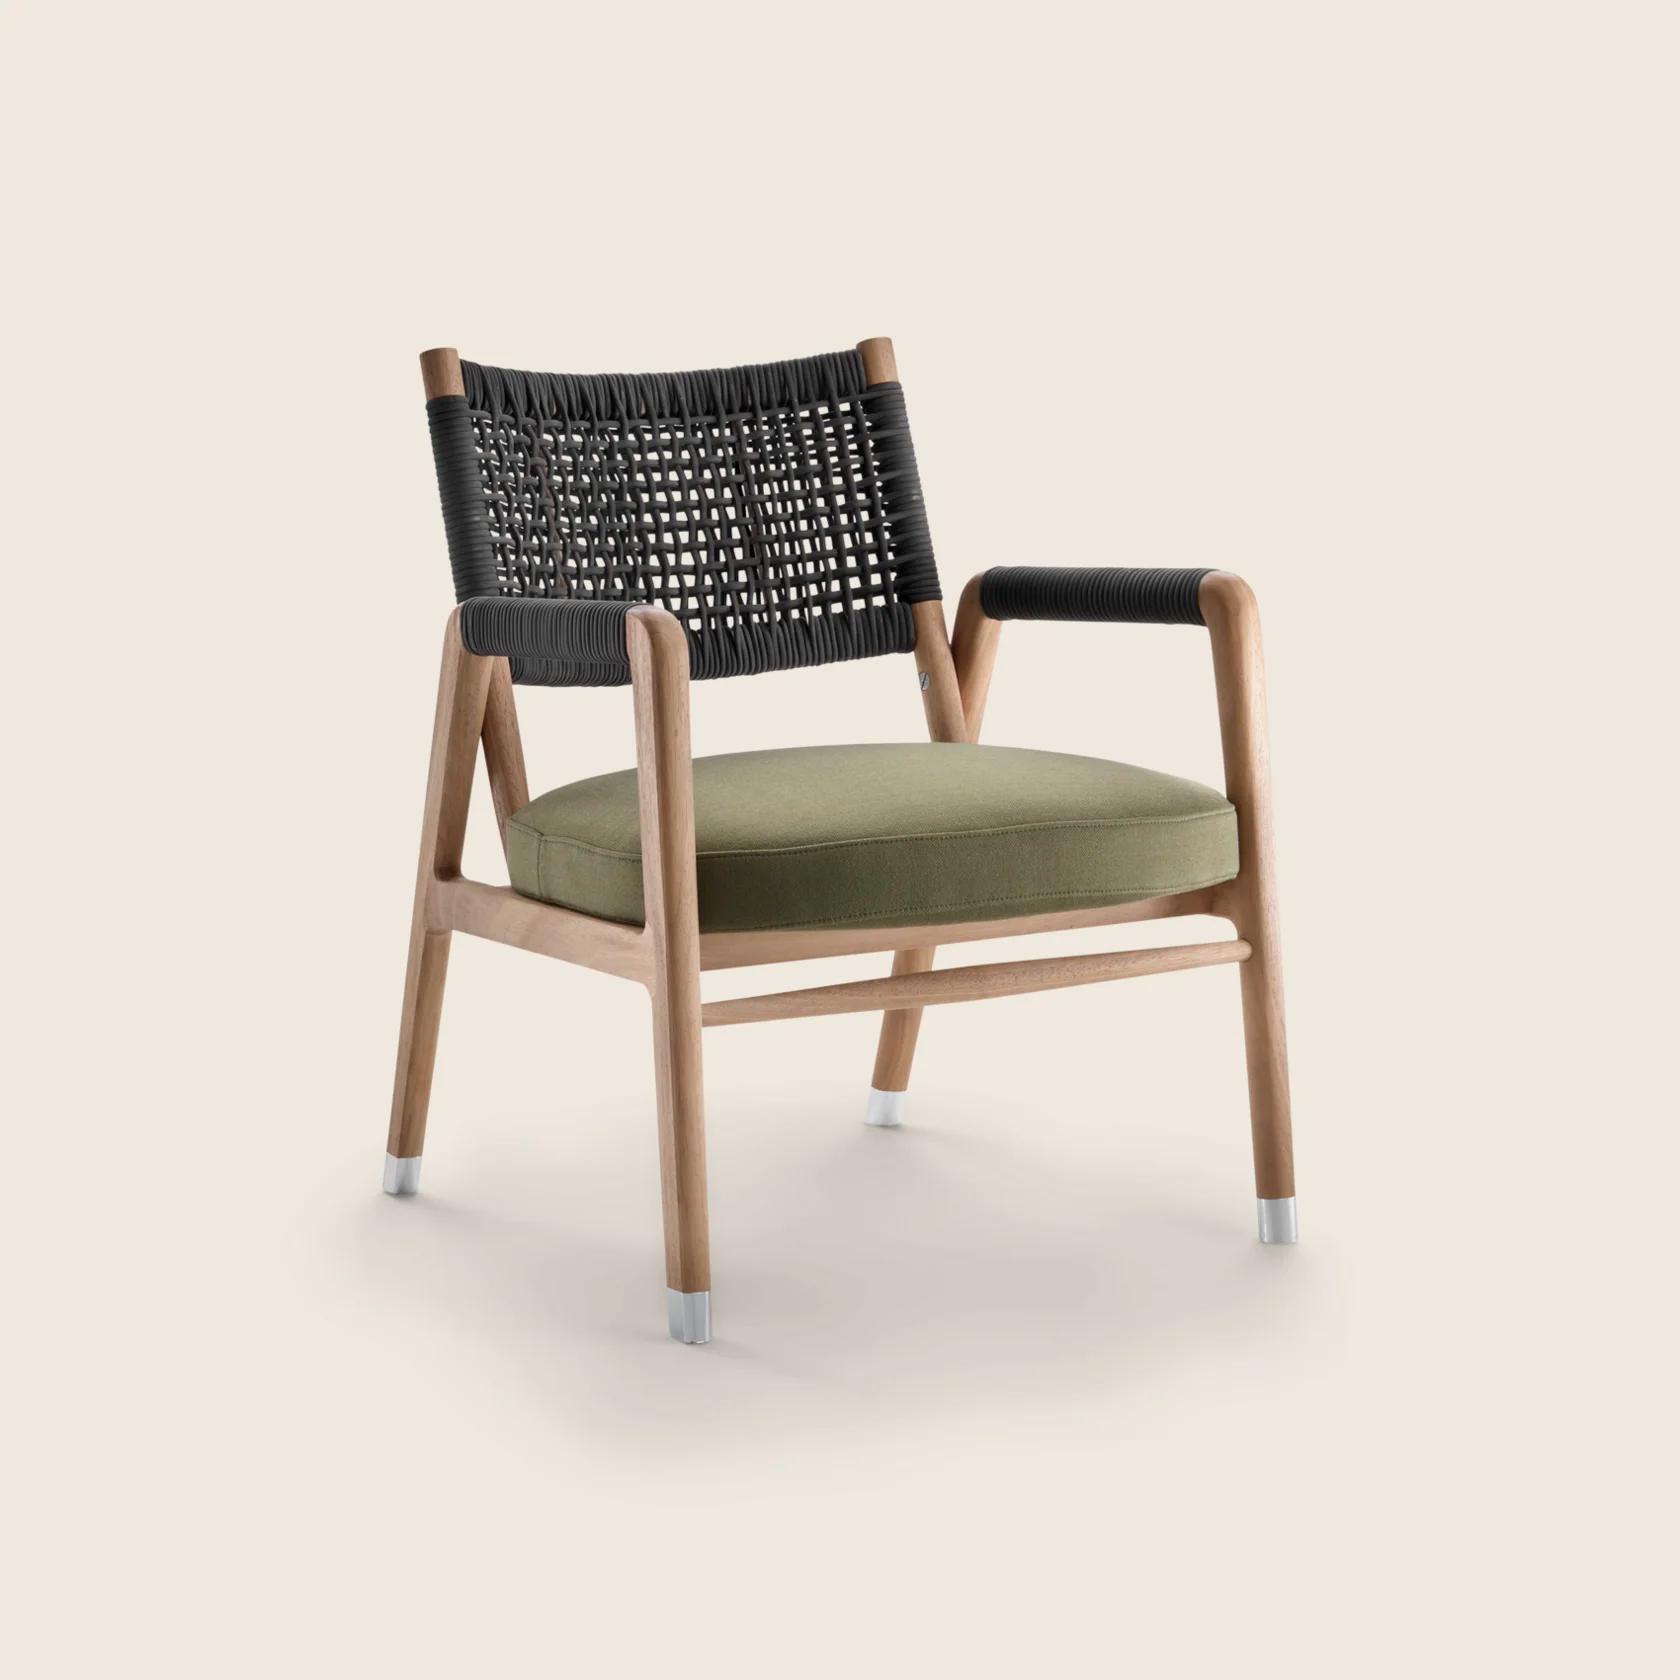 ORTIGIA OUTDOOR 扶手椅| Design Made in Italy - Flexform